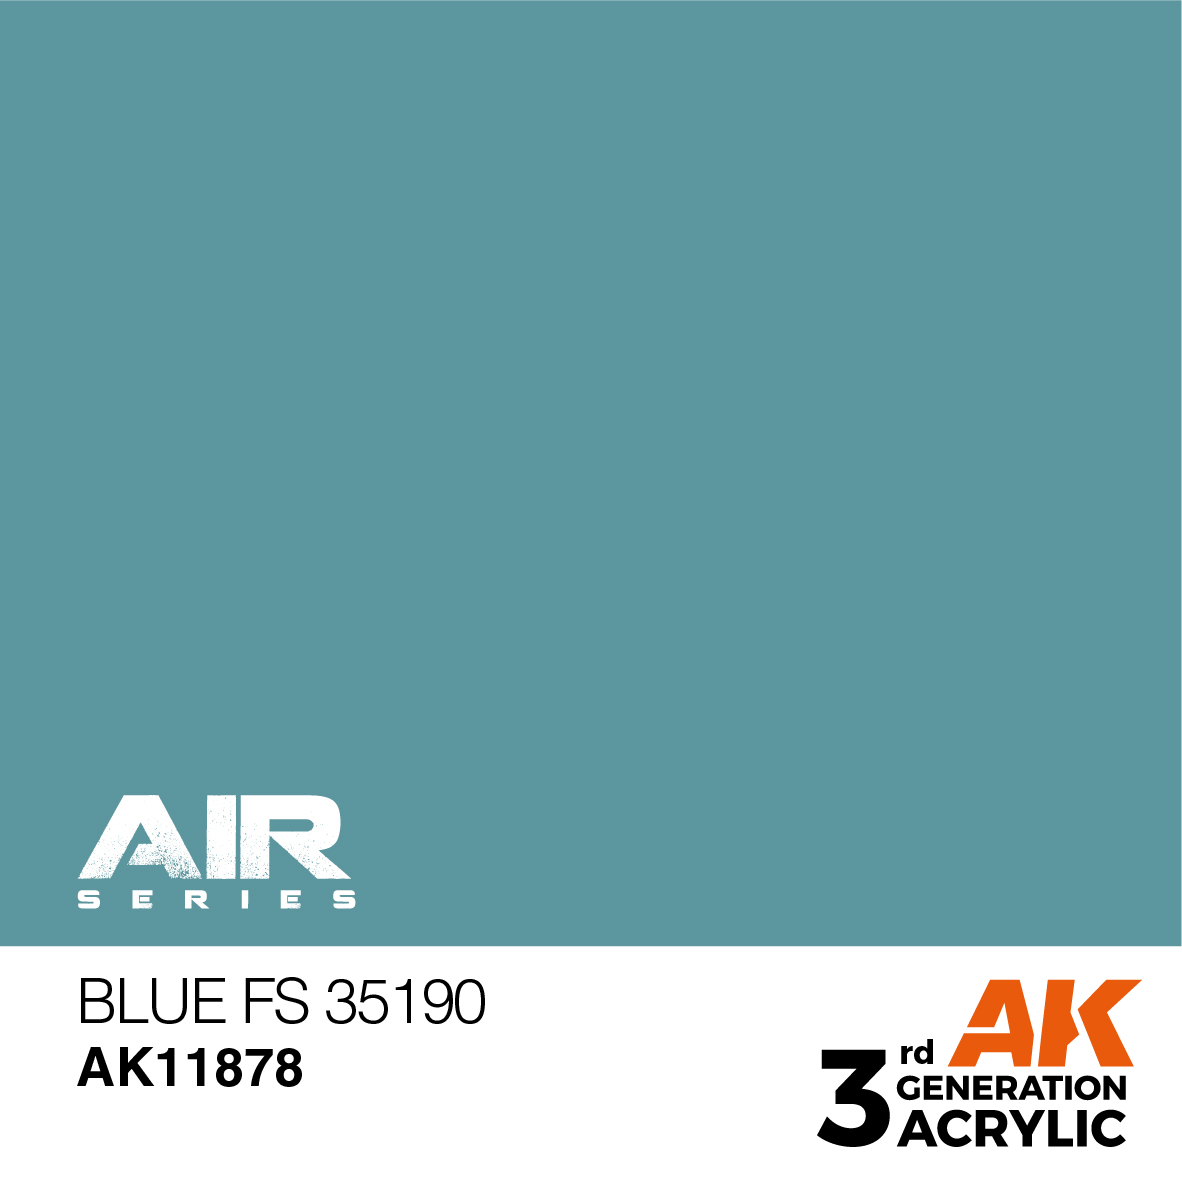 Blue FS 35190 – AIR